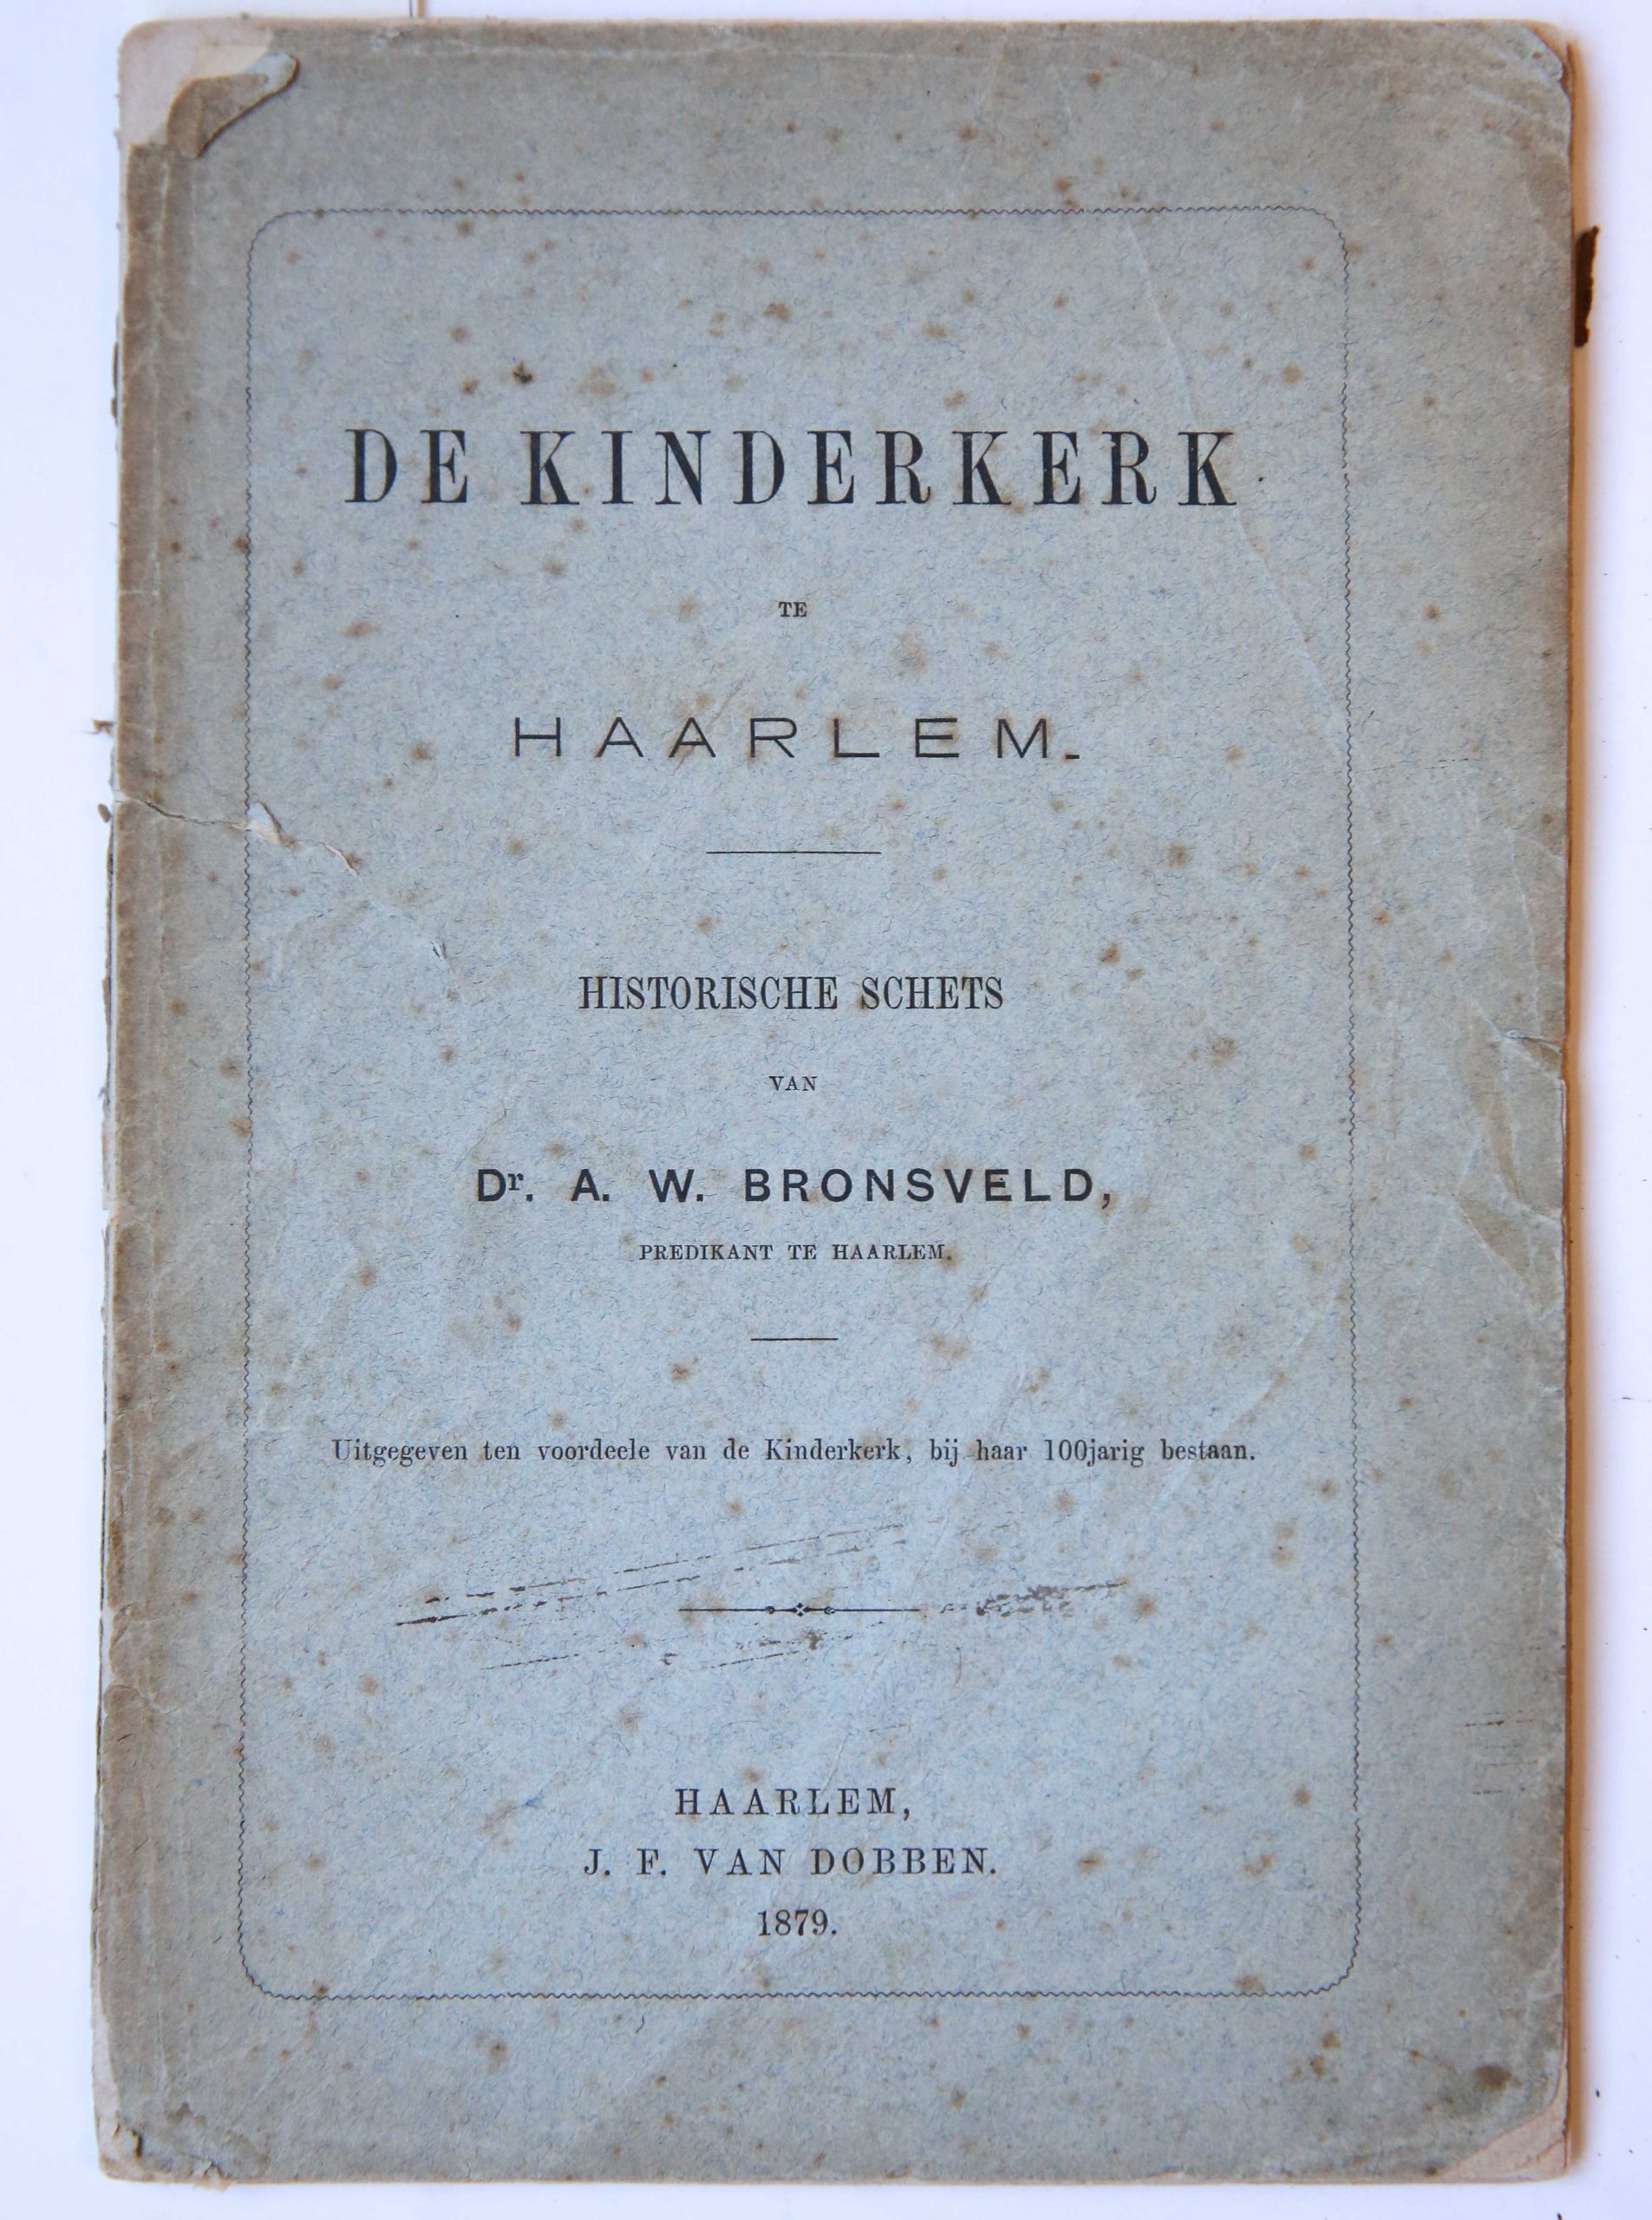 De Kinderkerk te Haarlem : historische schets, Haarlem : J.F. van Dobben, 1879, 40 pp.